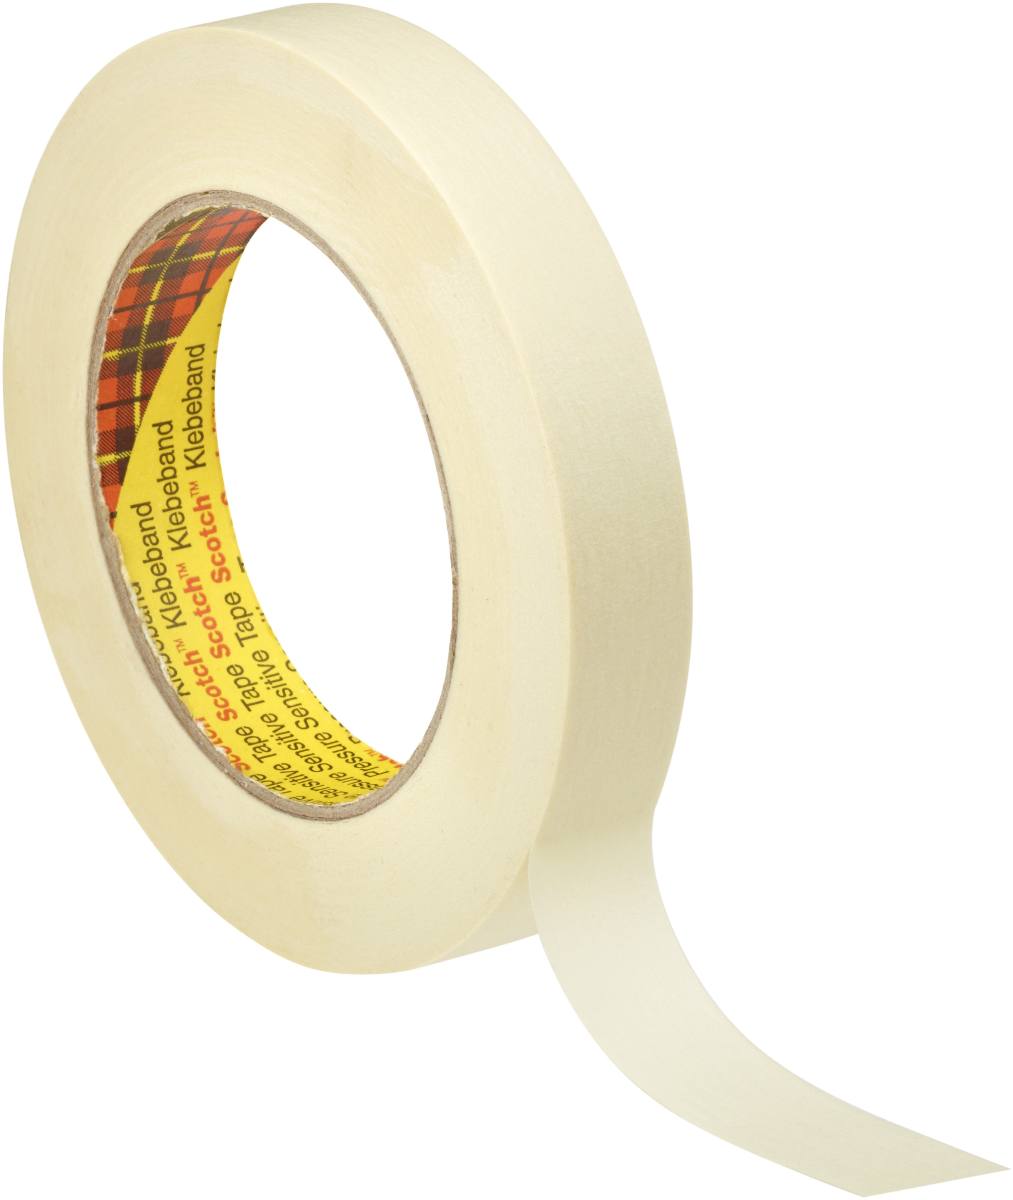 3M Scotch masking tape P3630, 24 mm x 50 m